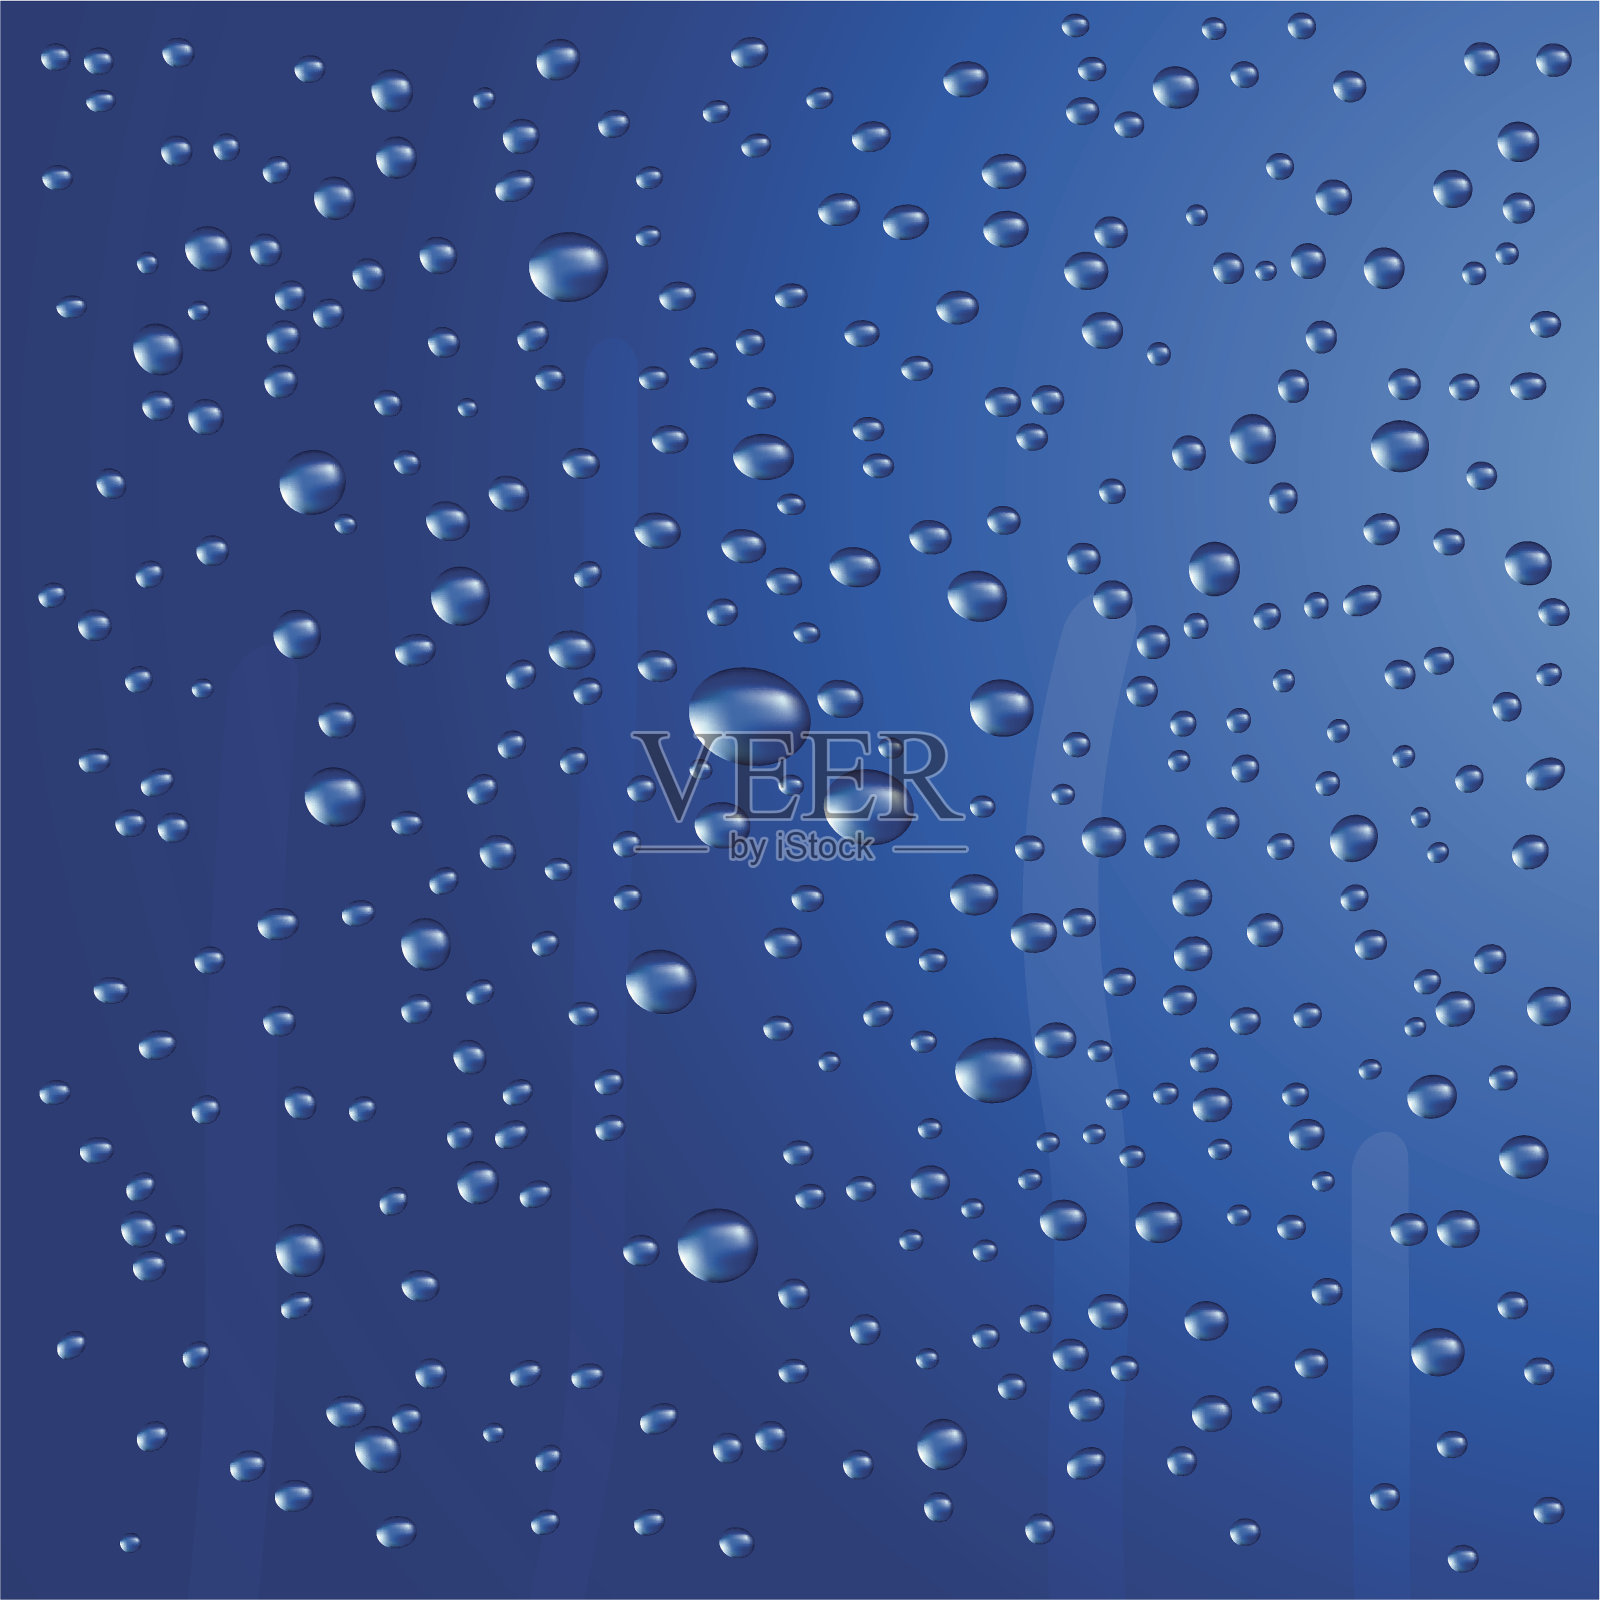 雨点在蓝色背景上结成串珠状插画图片素材